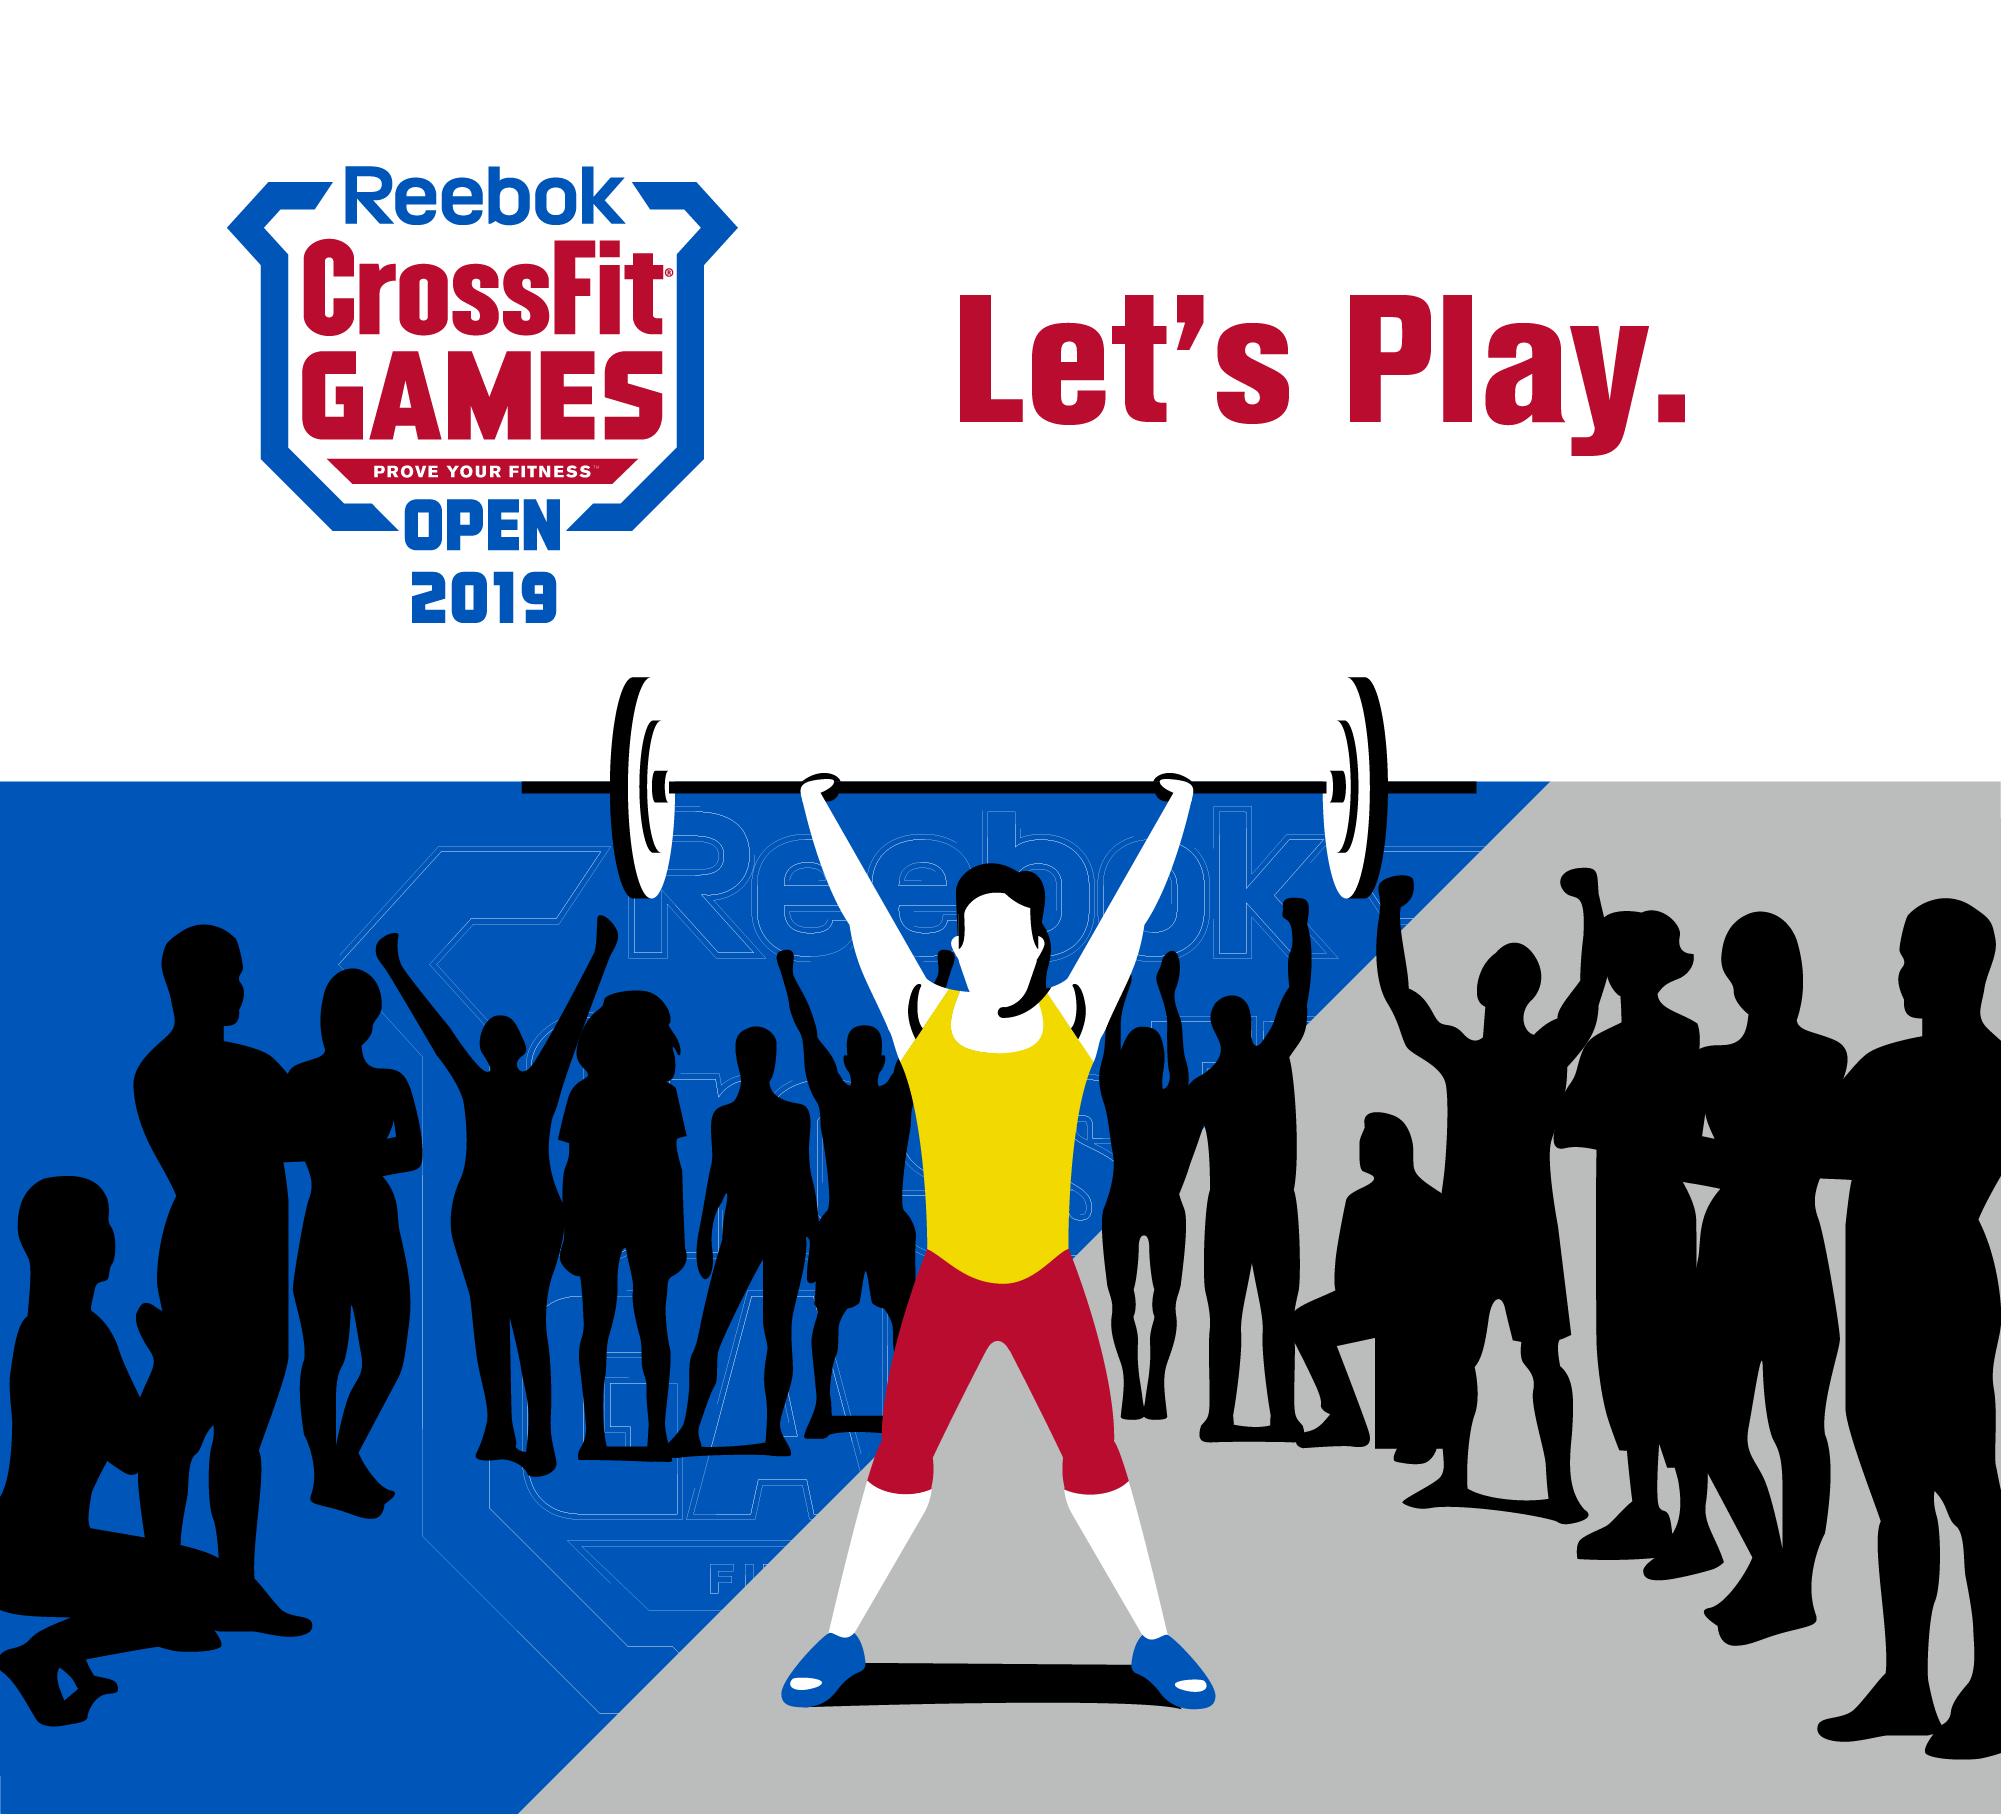 reebok crossfit games open 2019